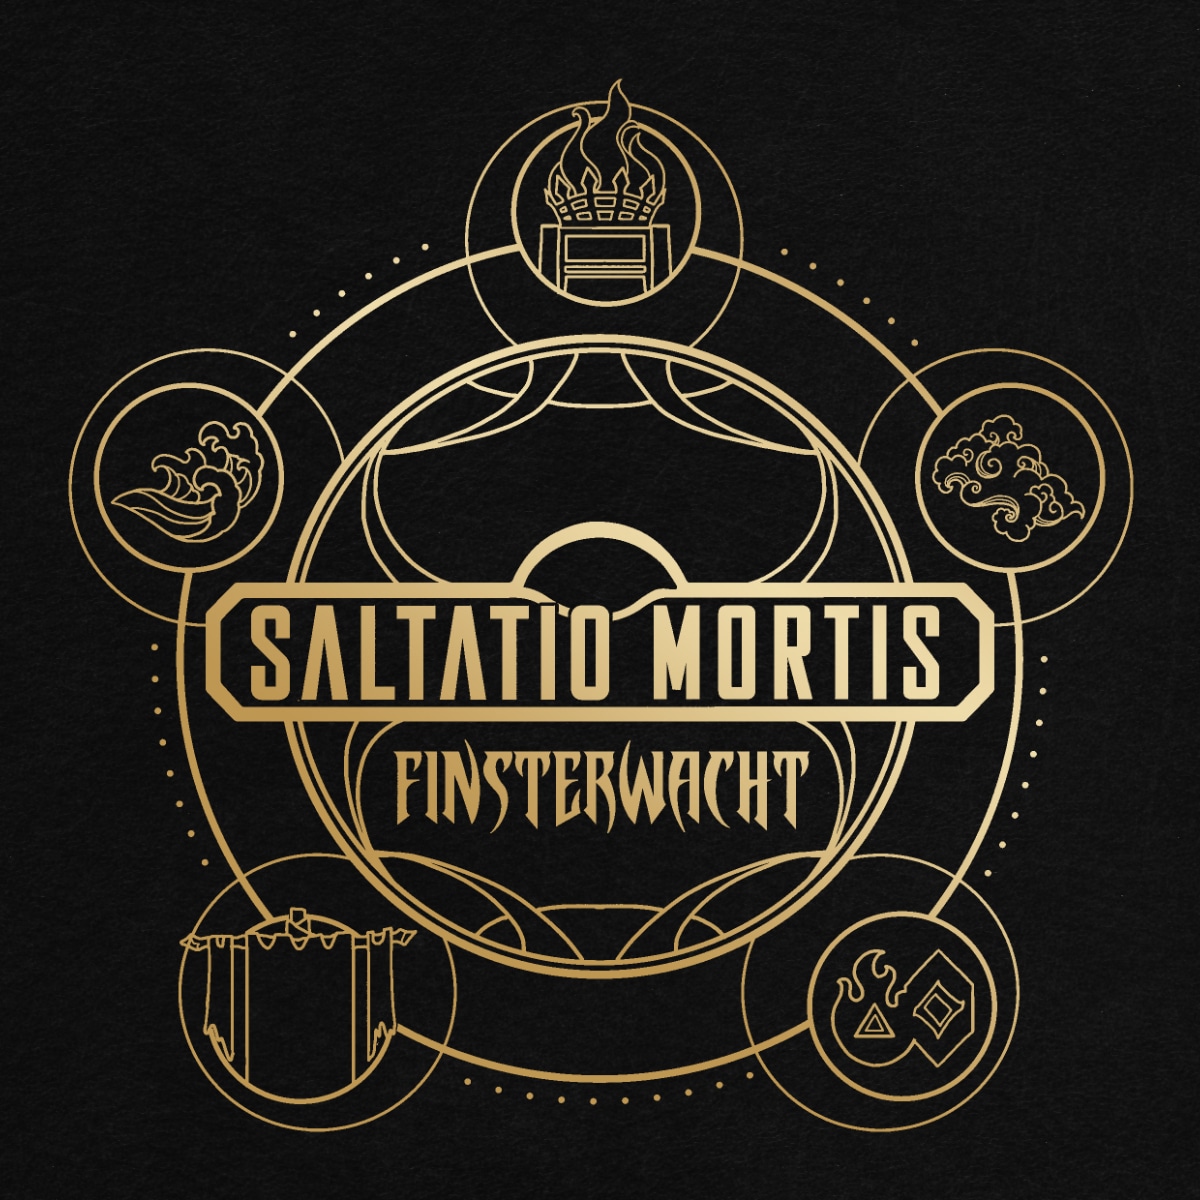 Saltatio Mortis: Neue Video-Single "Der Himmel muss warten" aus "Finsterwacht" @ Sonic Seducer